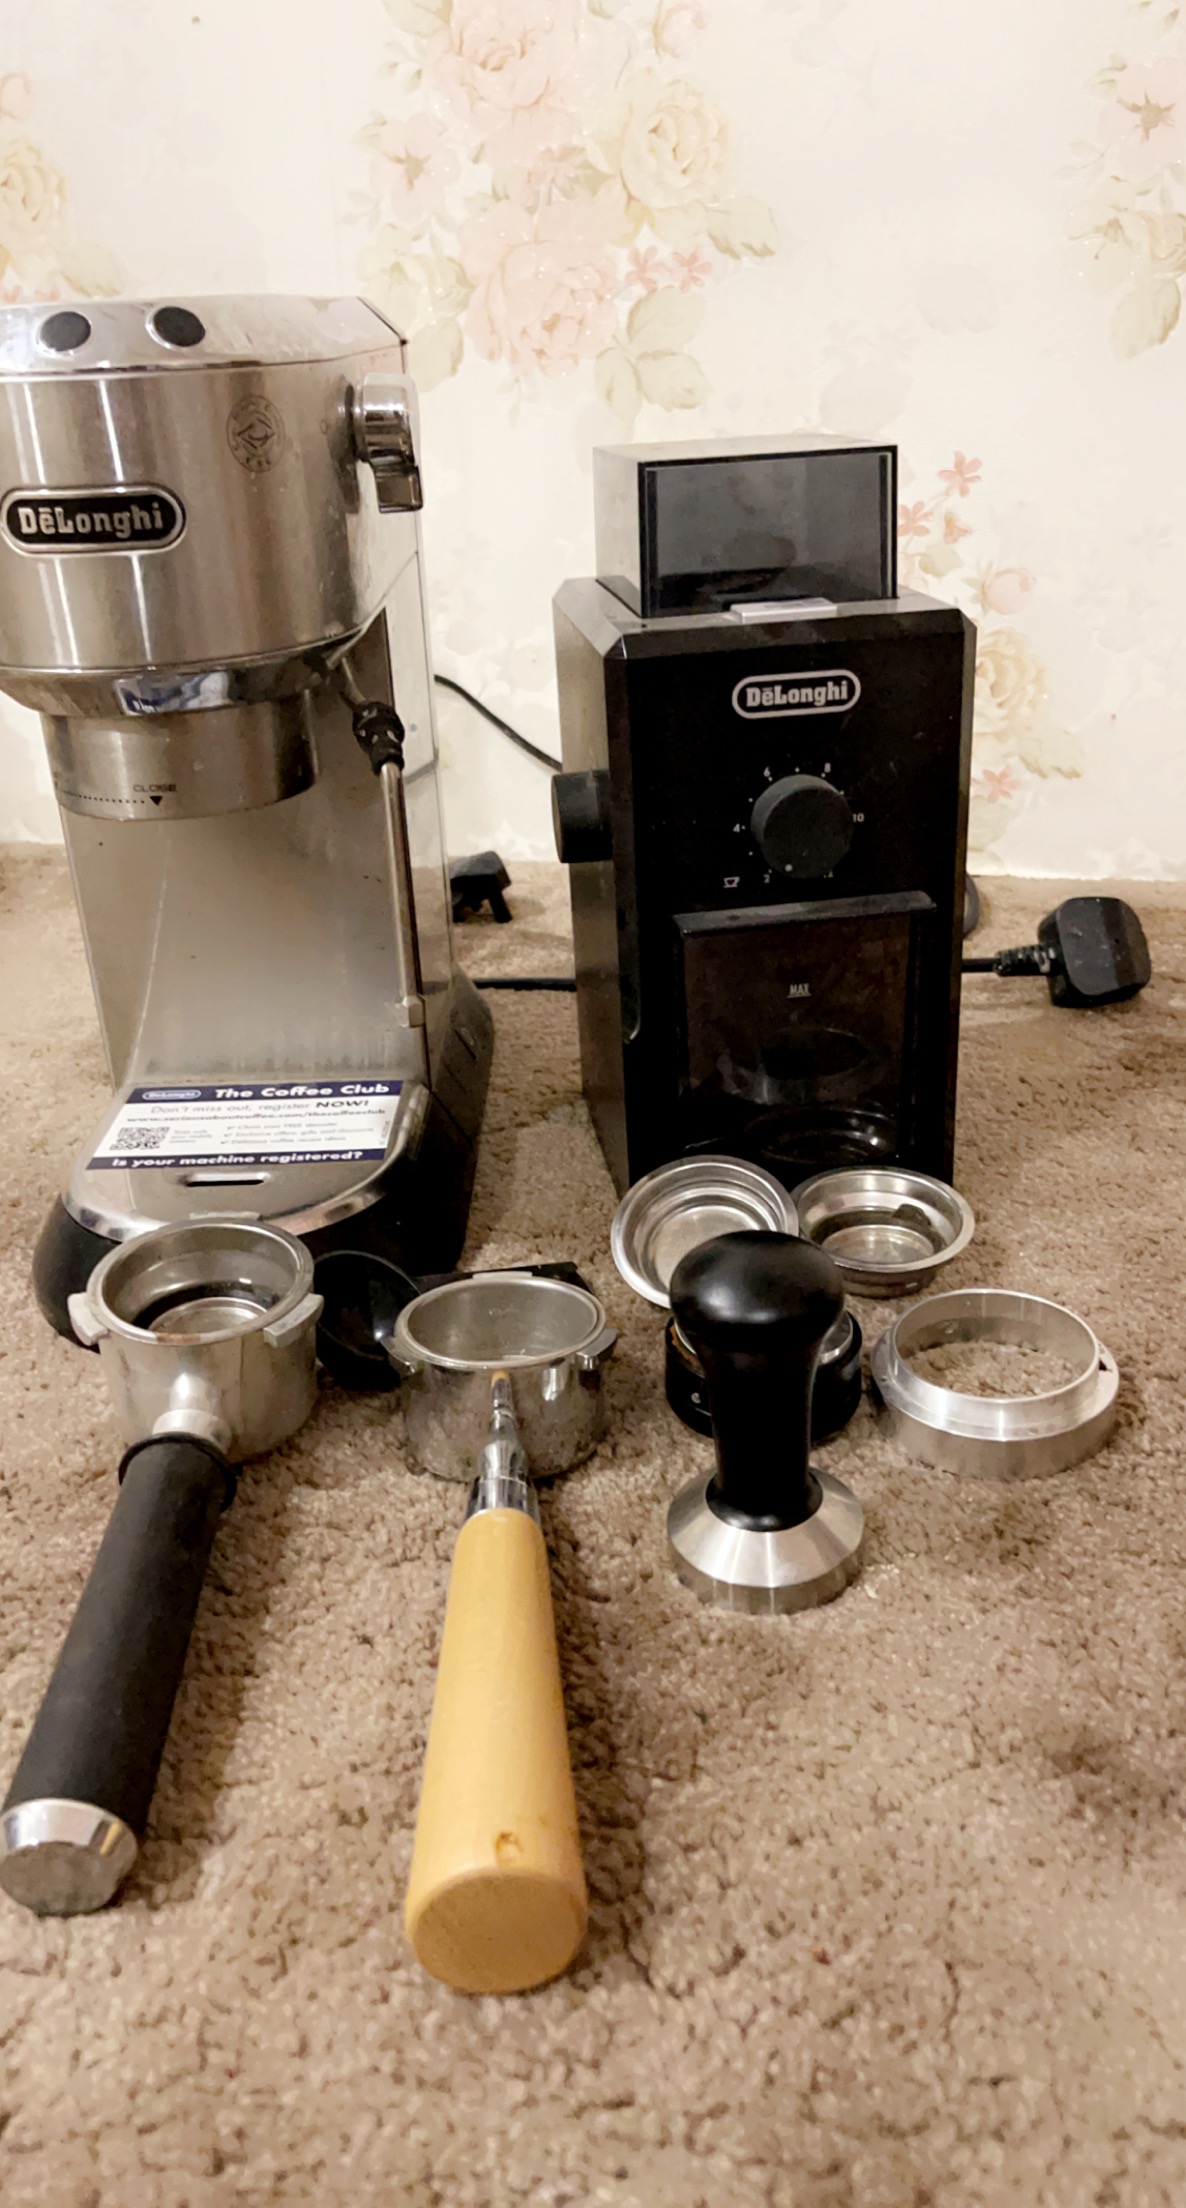 مكينة قهوة ديدكا ديلونجي وطاحونة وبكج كامل